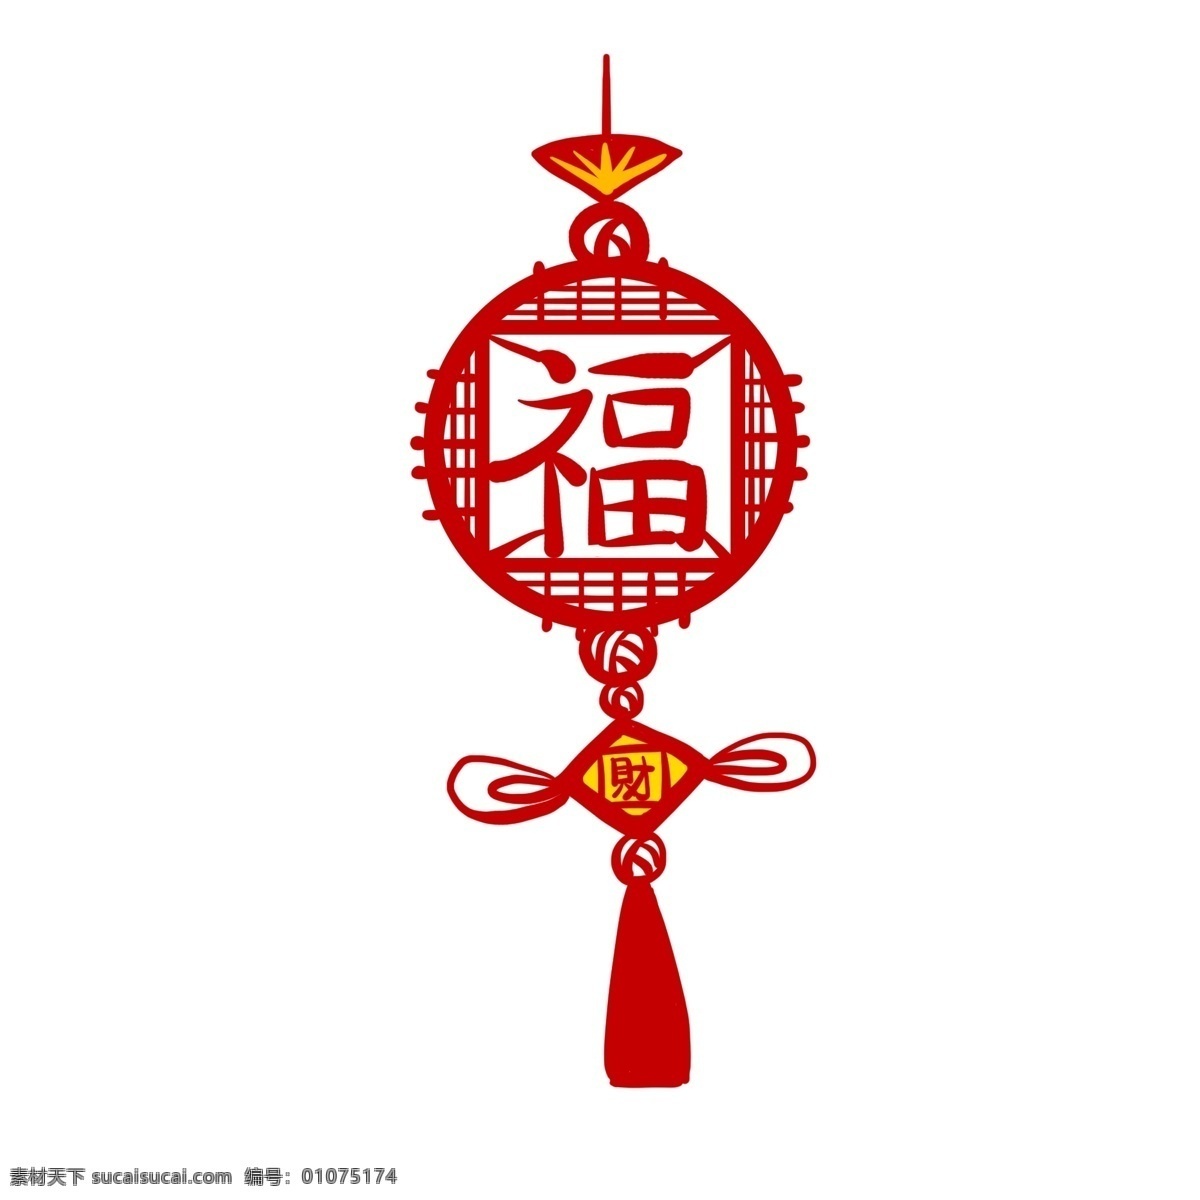 2019 中国 风 中国结 中国风 新年快乐 新年 福字 福 手绘中国结 红色 挂件 红色挂件 手绘挂件 挂饰